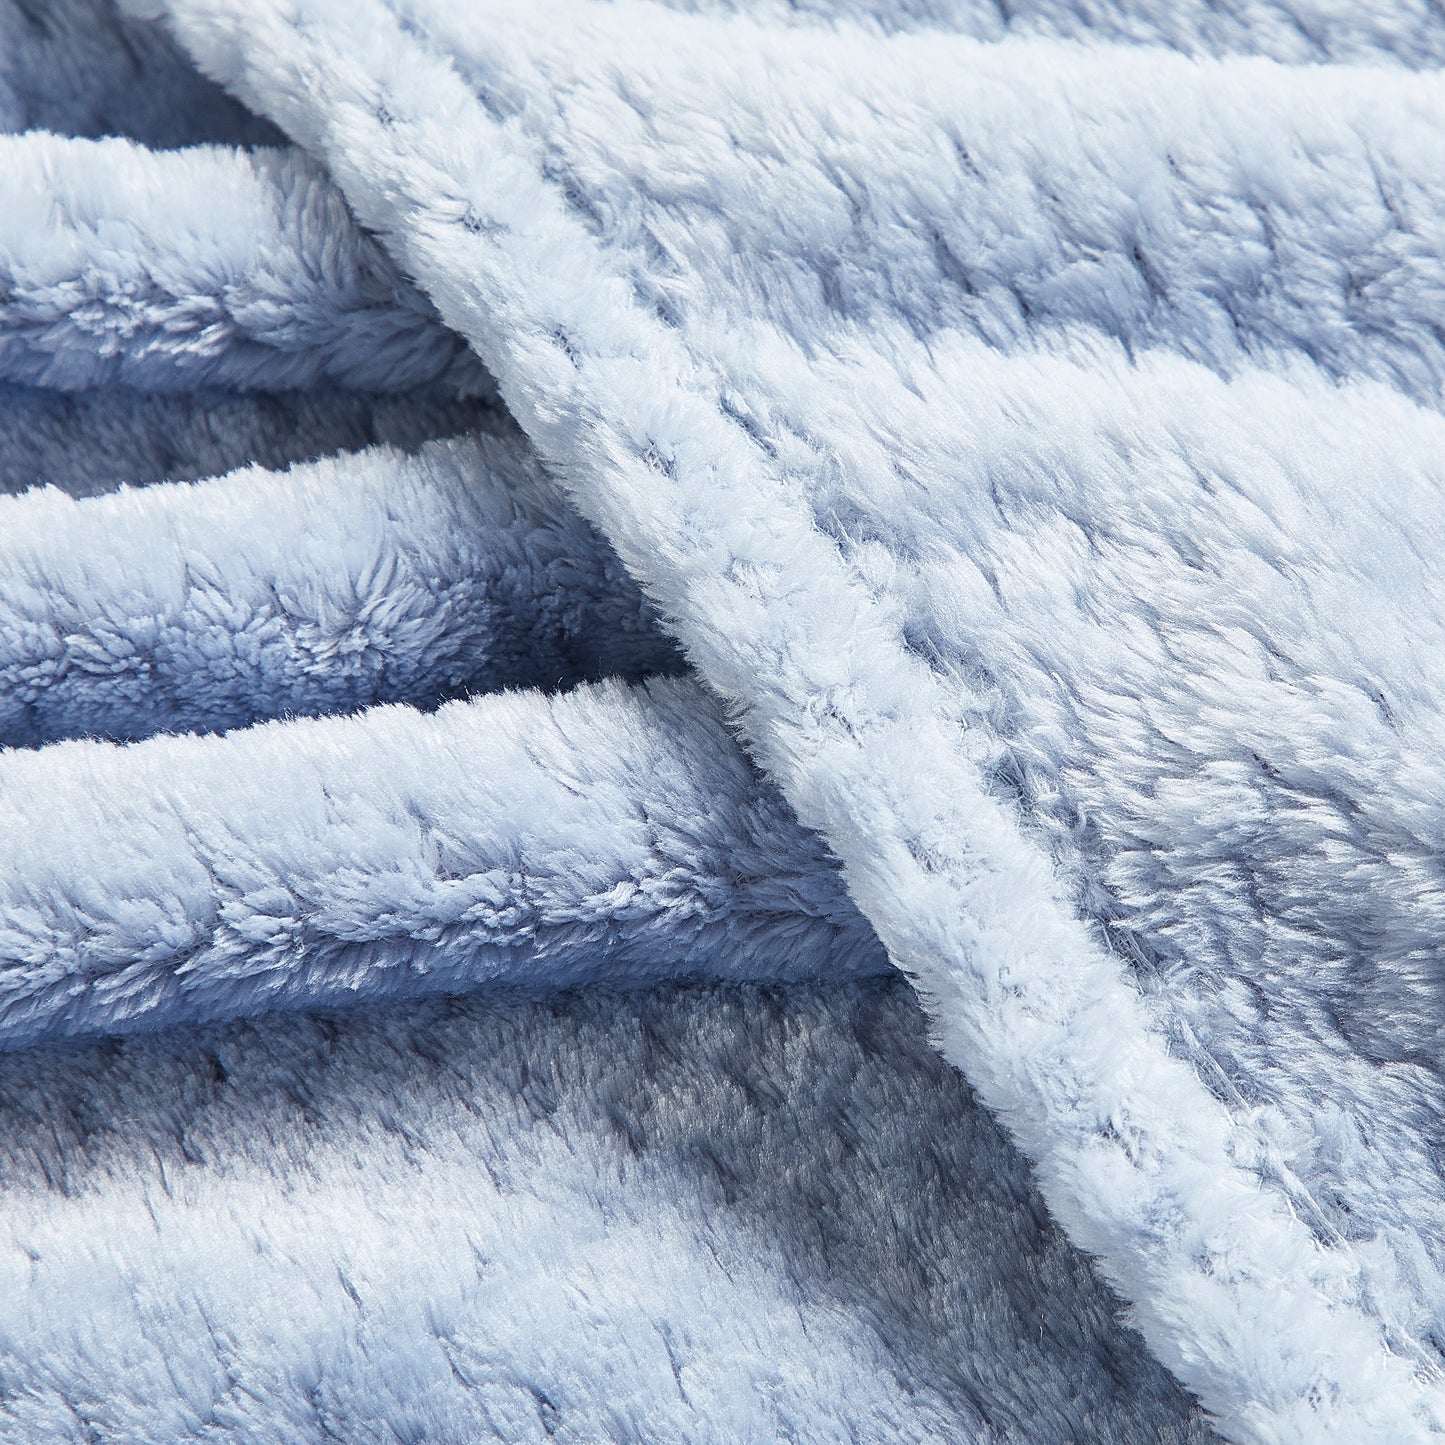 Classic Textured Fleece Blanket - Chambray